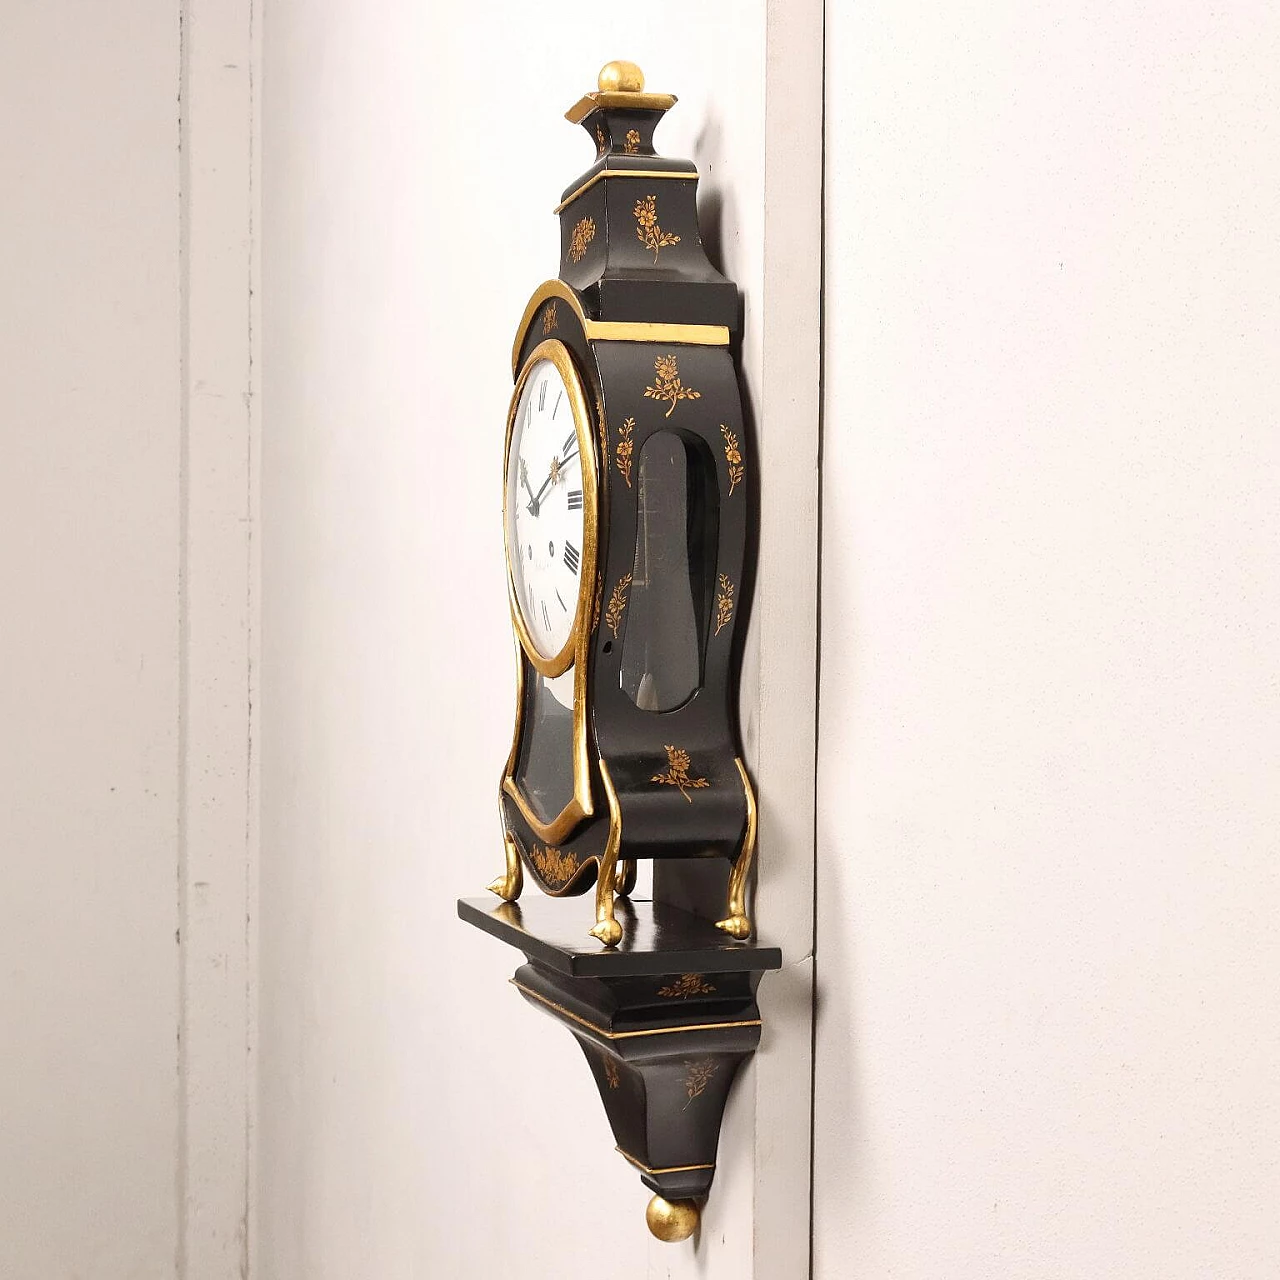 Orologio a pendolo Neuchateloise in legno ebanizzato con mensola, '800 9